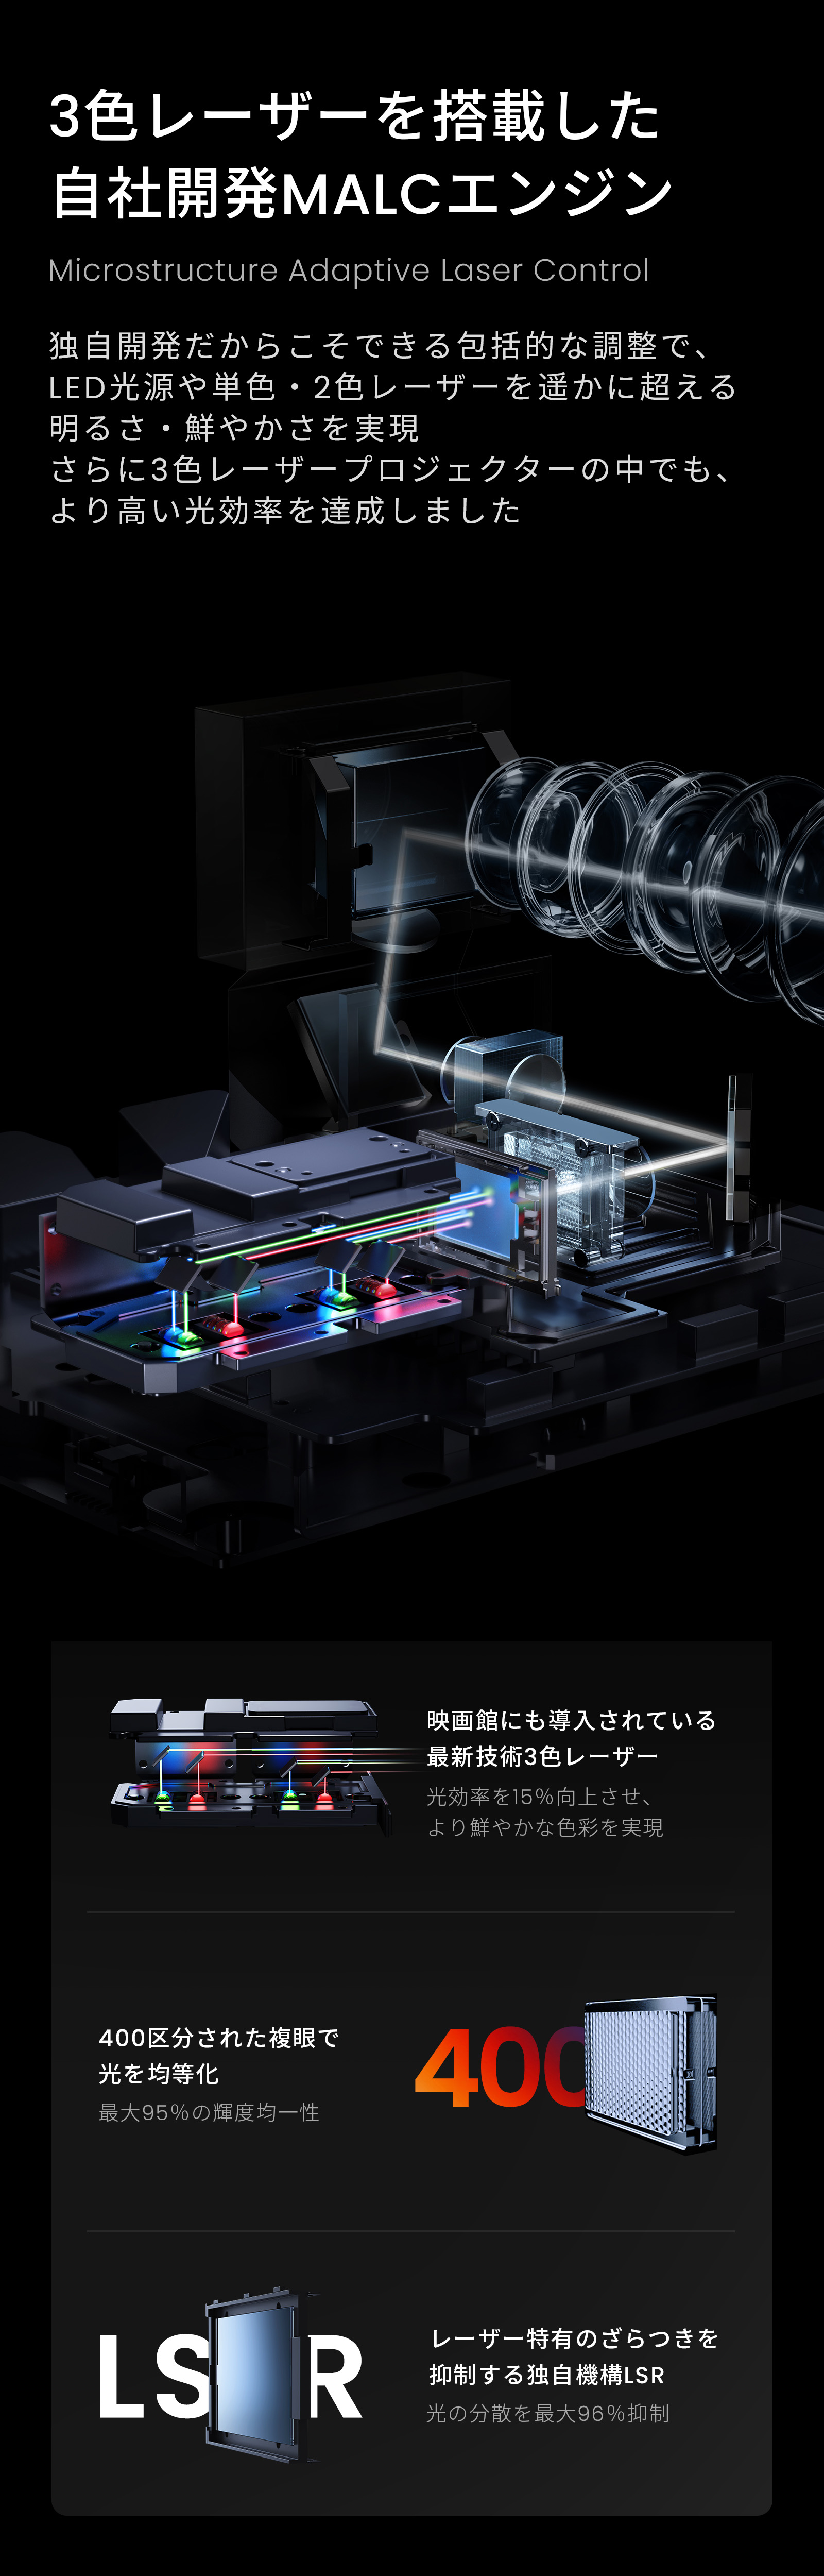 3色レーザーを搭載した自社開発MALCエンジン Microstructure Adaptive Laser Control